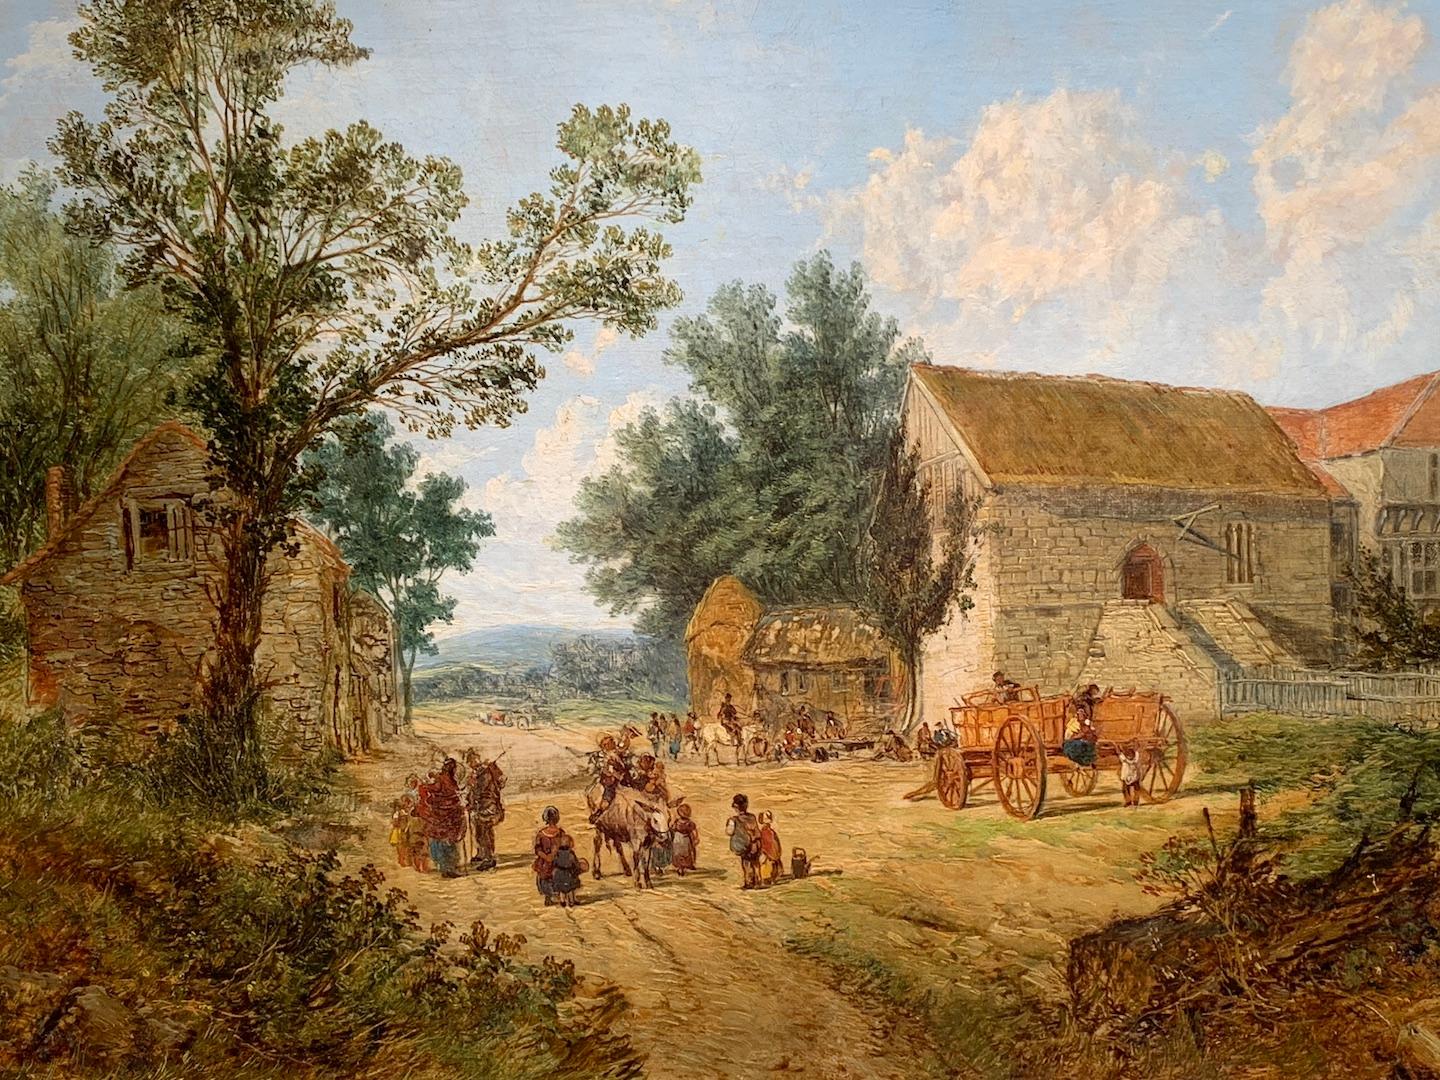  Antikes Ölgemälde einer englischen Dorflandschaft, mit Pferden, Menschen, einem pub. – Painting von John Holland Senior